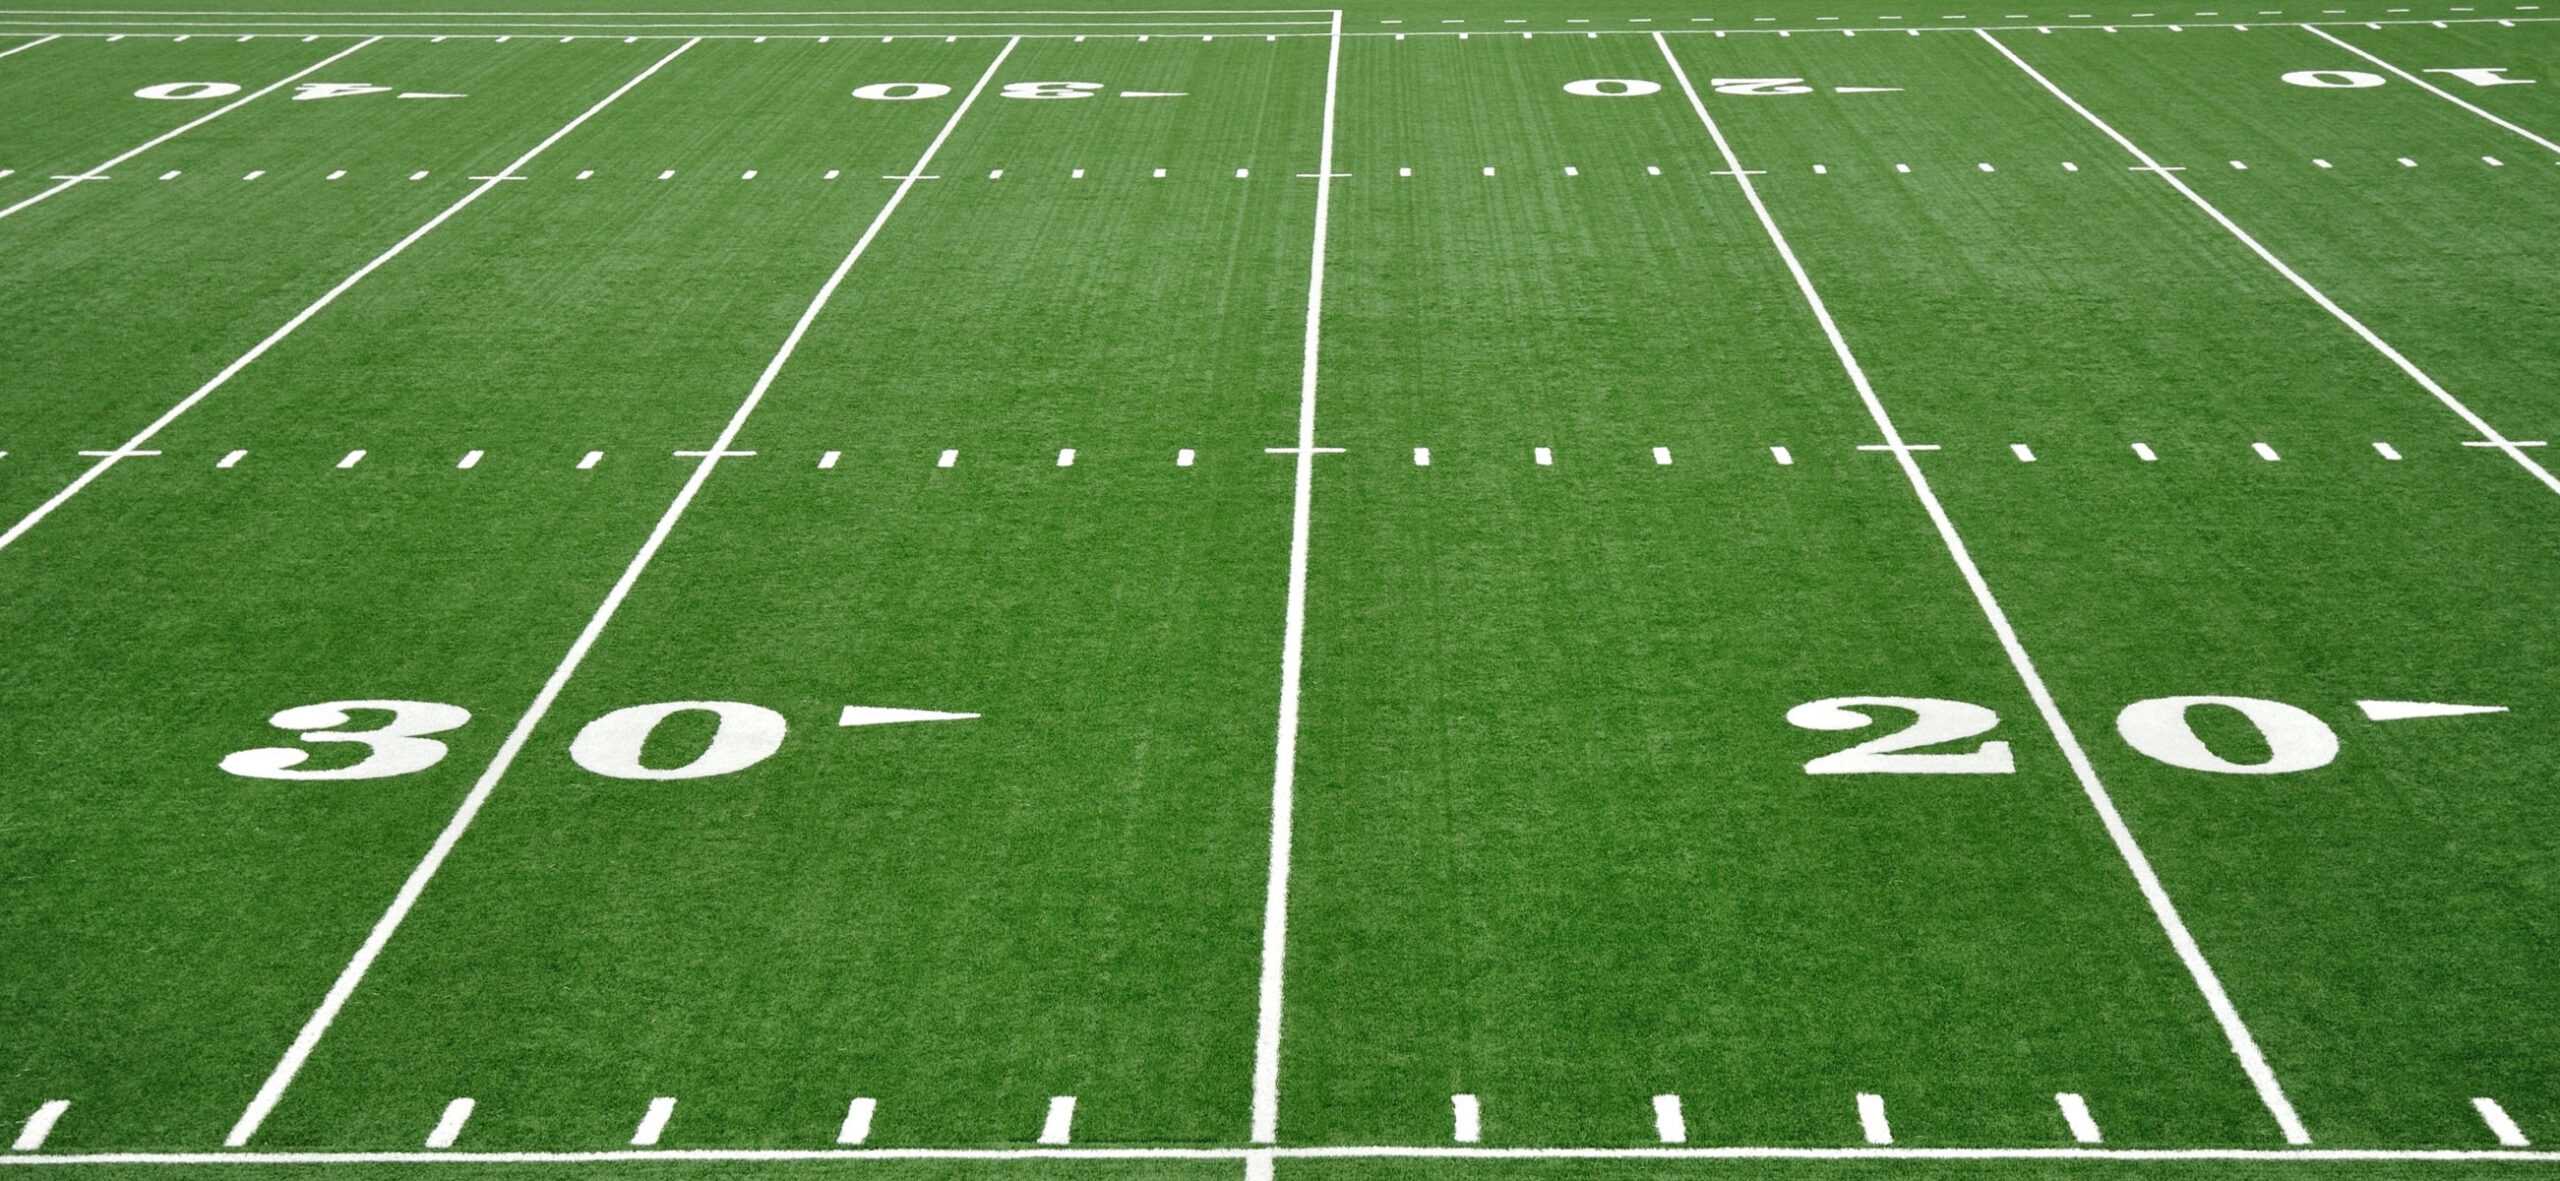 Football Field Blank Template - Imgflip Inside Blank Football Field Template